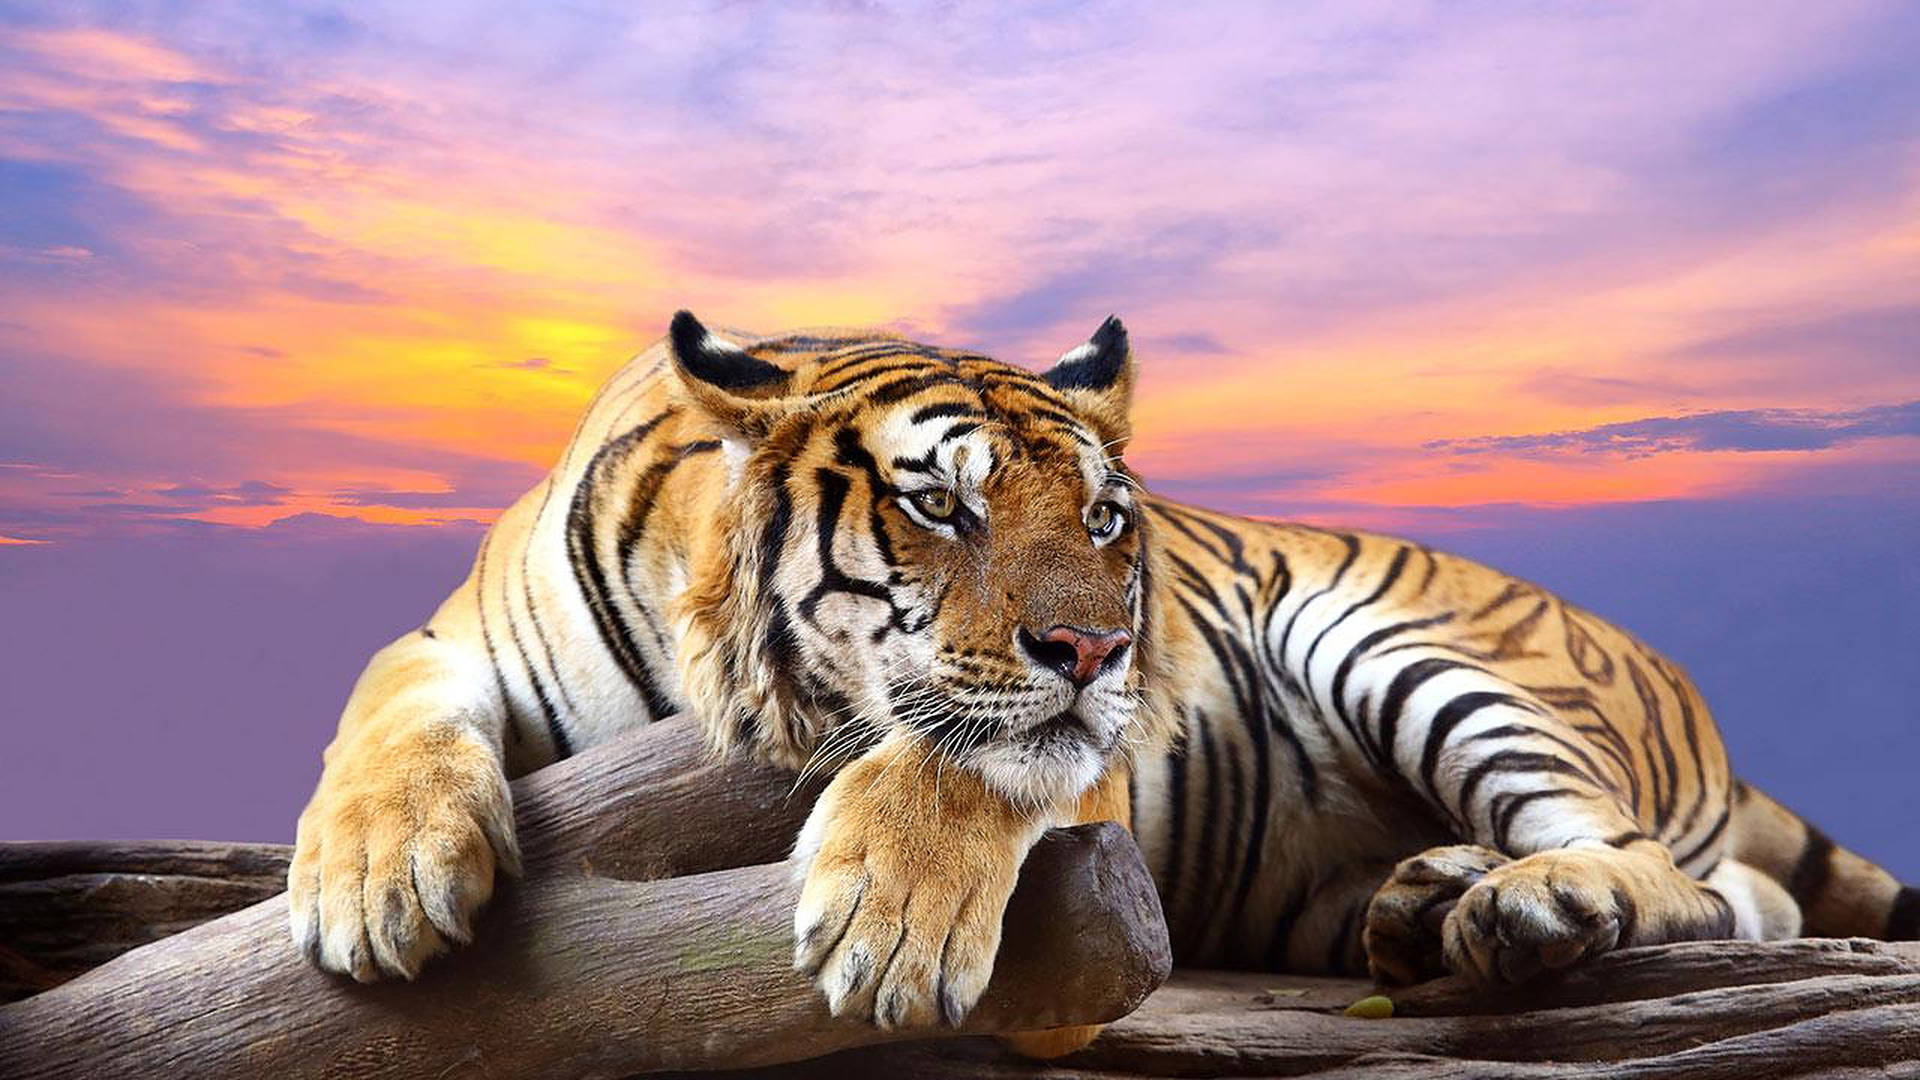 Wild Animal Tiger During Sunset Wallpaper